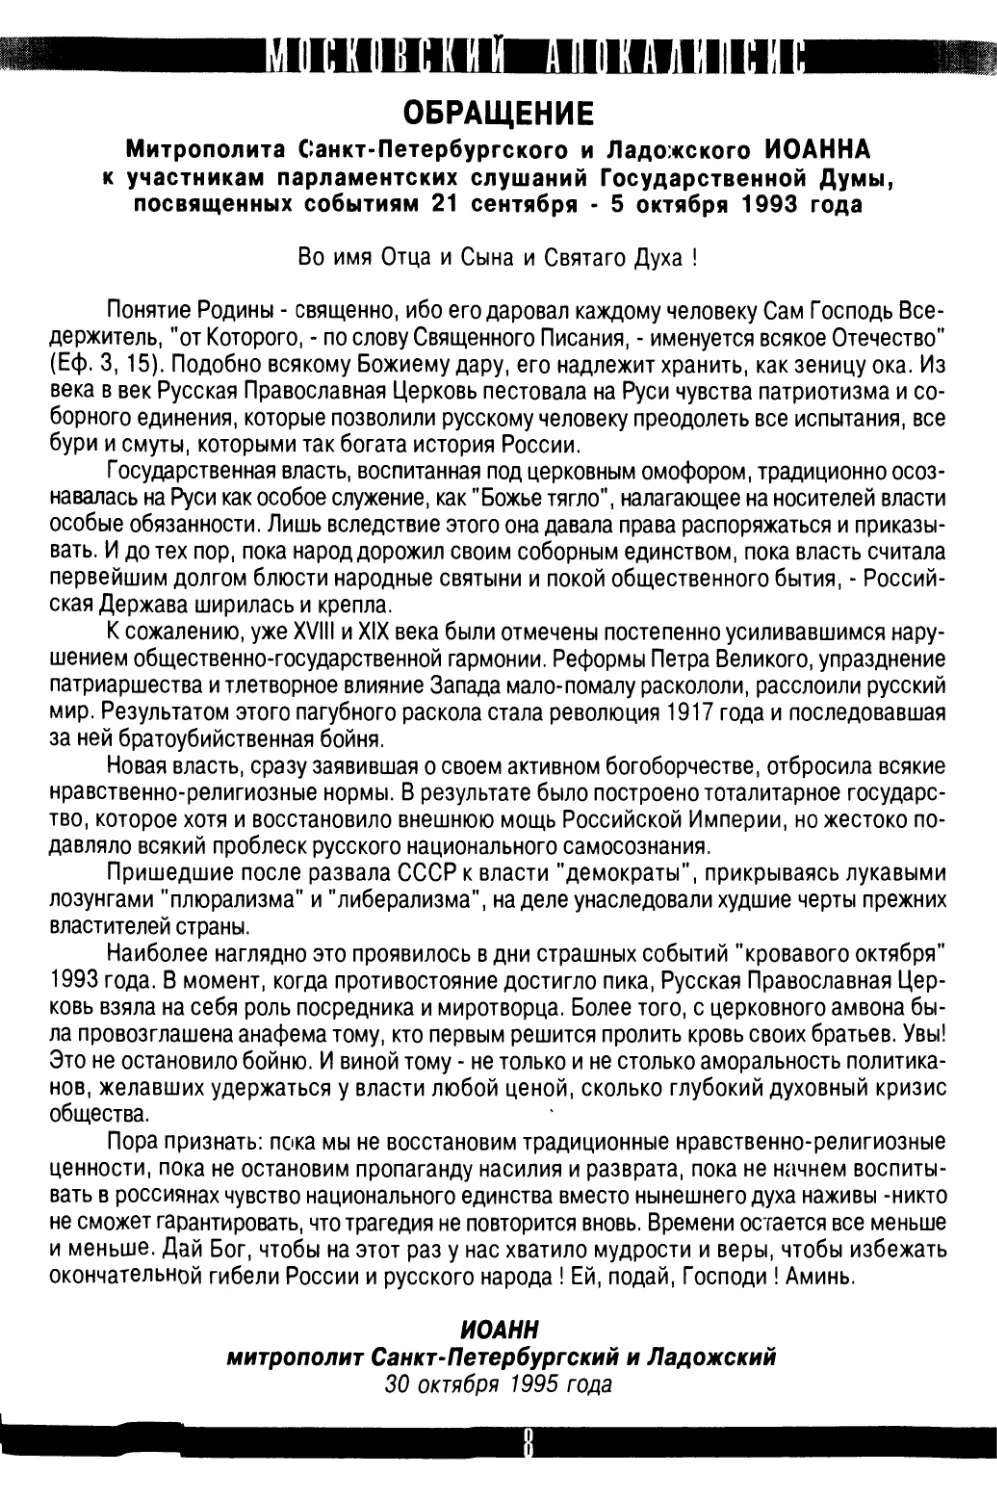 Обращение  Митрополита  Санкт-Петербургского  и  Ладожского  Иоанна  к  участникам  парламентских  слушаний  Государственной  Думы, посвященных  событиям  21  сентября  -  5  октября  1993 года